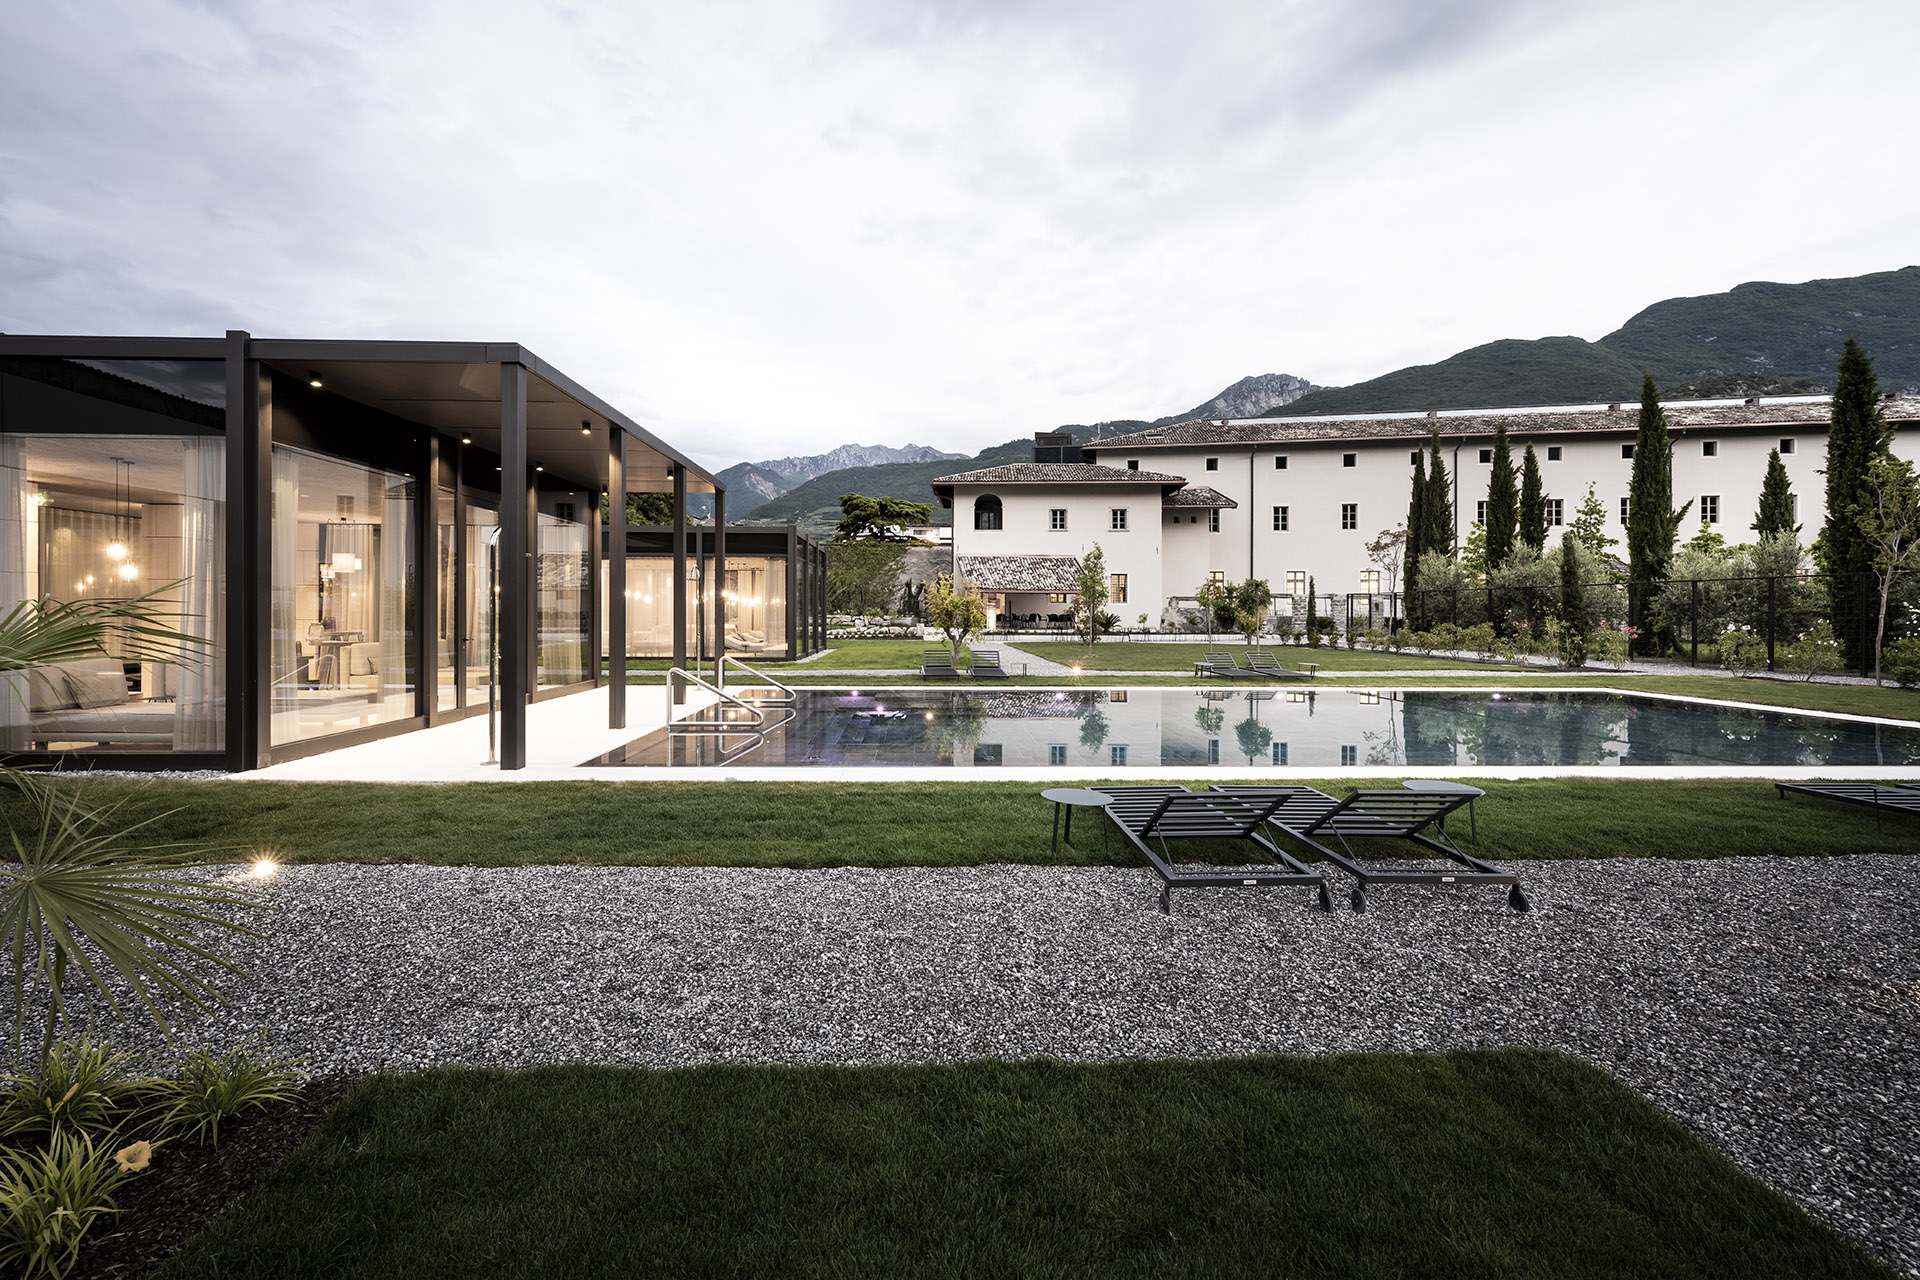 Hotel y spa en un monasterio del siglo XVII para un ambiente atemporal a orillas del lago de Garda